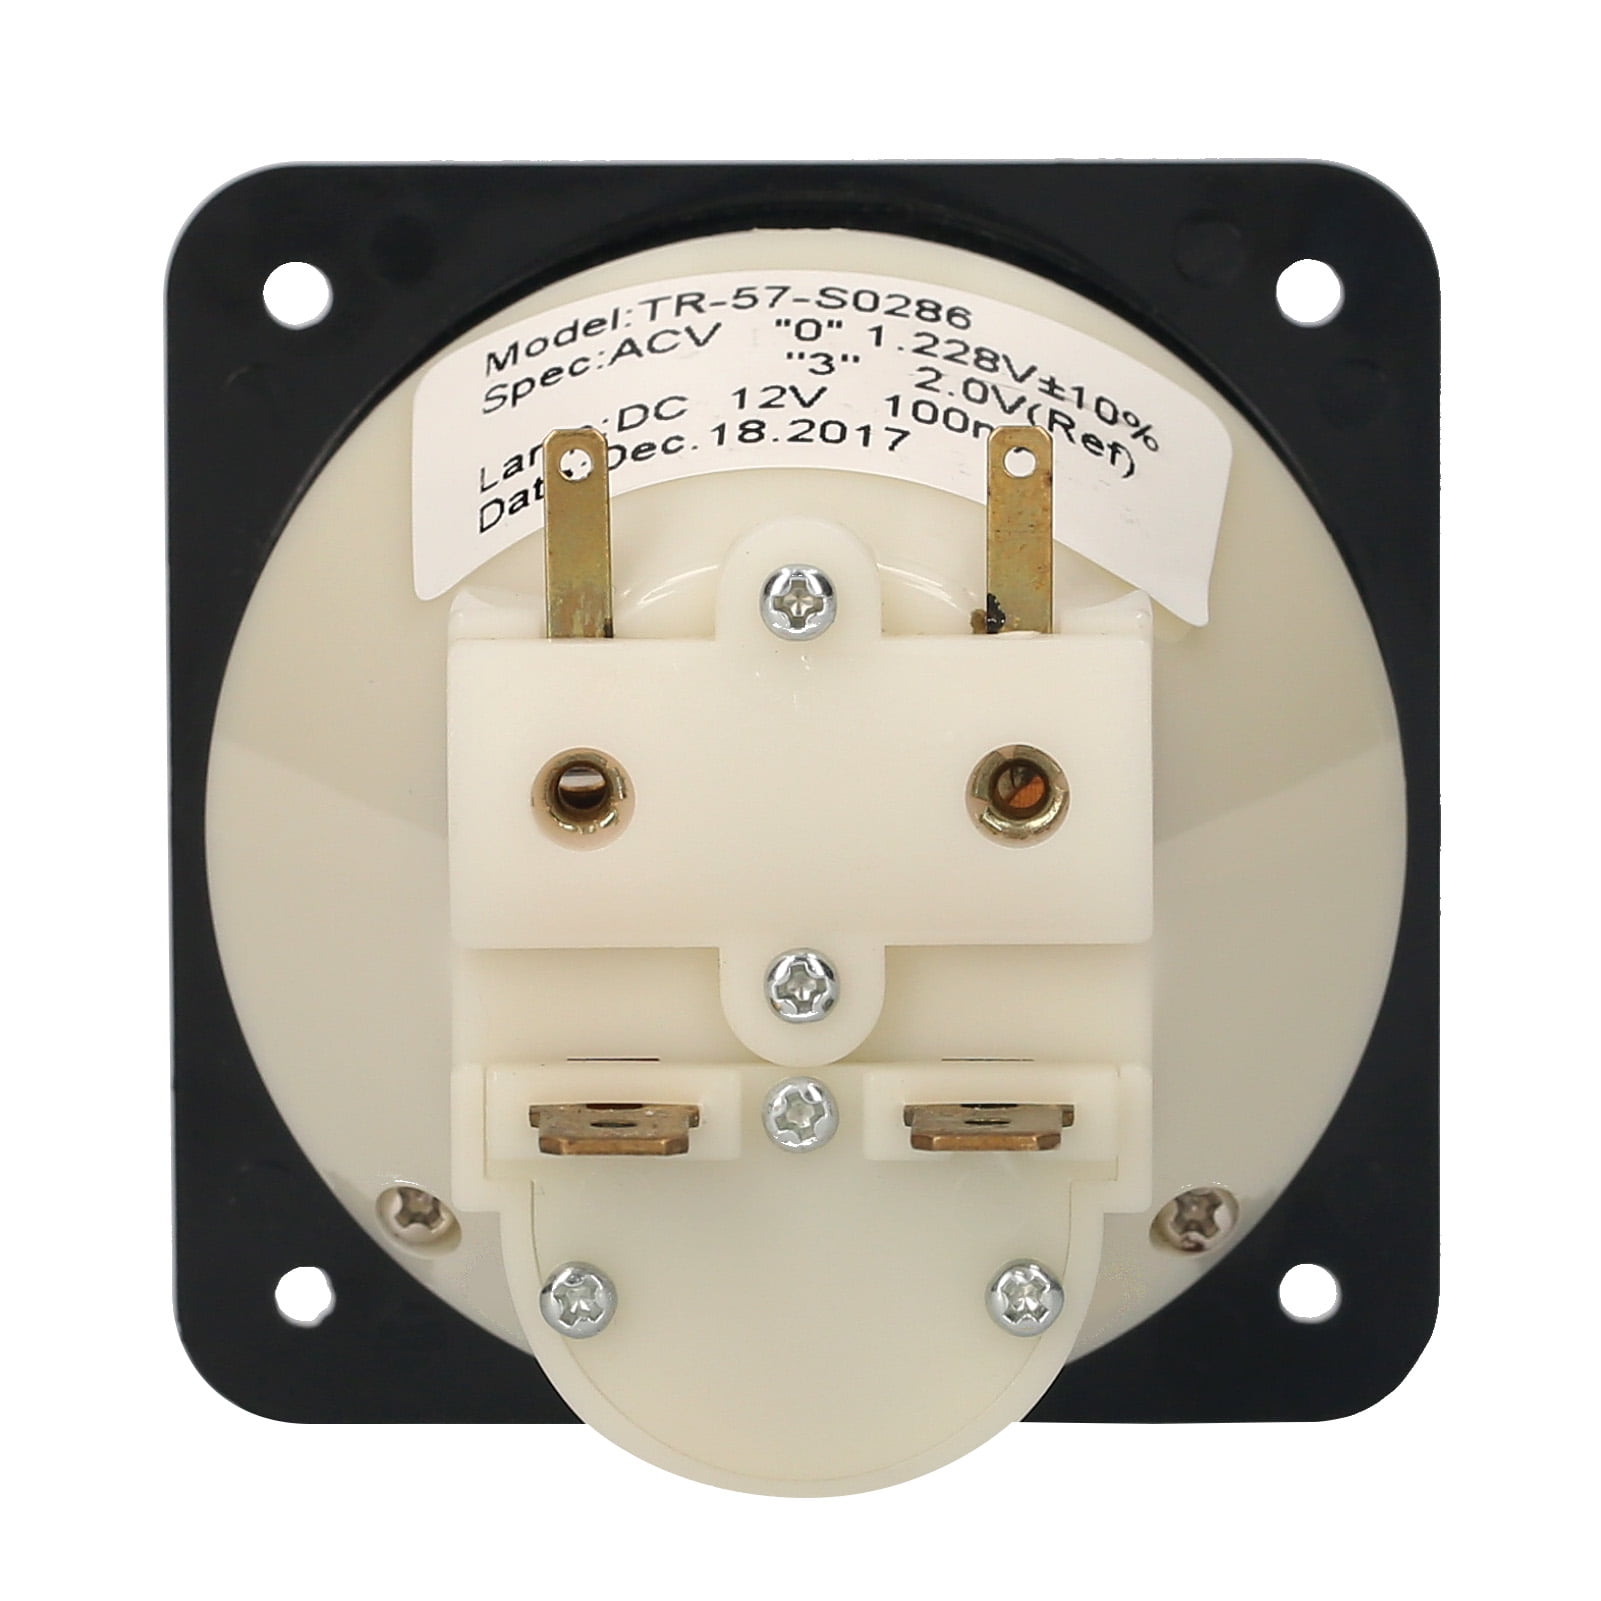 12v Analog Panel VU Meter Audio Level Indicator Meter for Amplifier Speaker